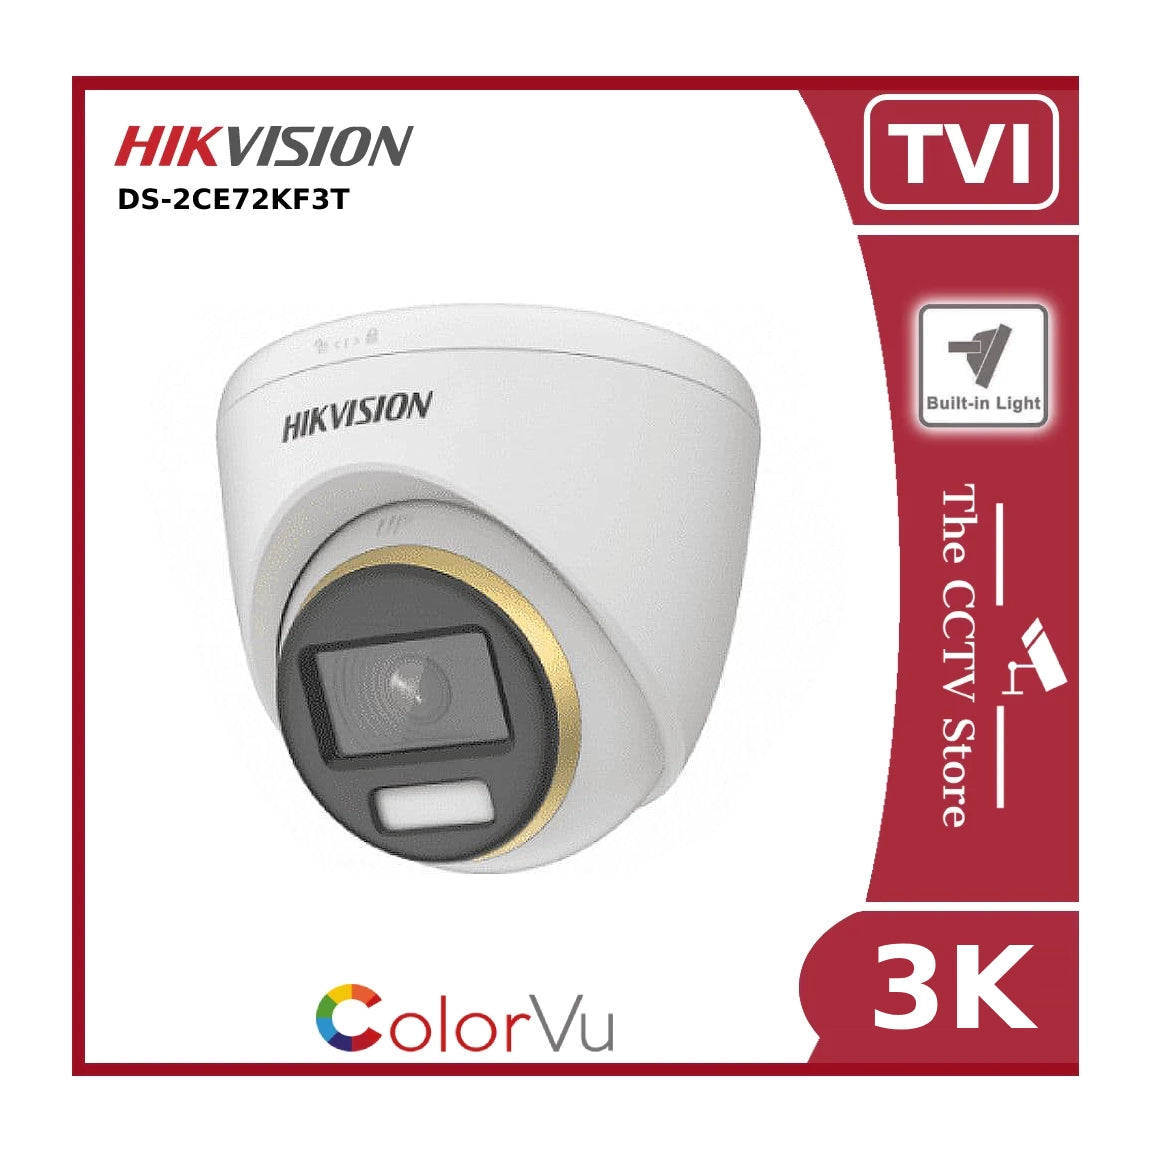 3K Hikvision DS-2CE72KF3T 3K ColorVu TVI Fixed Turret Camera - Offer